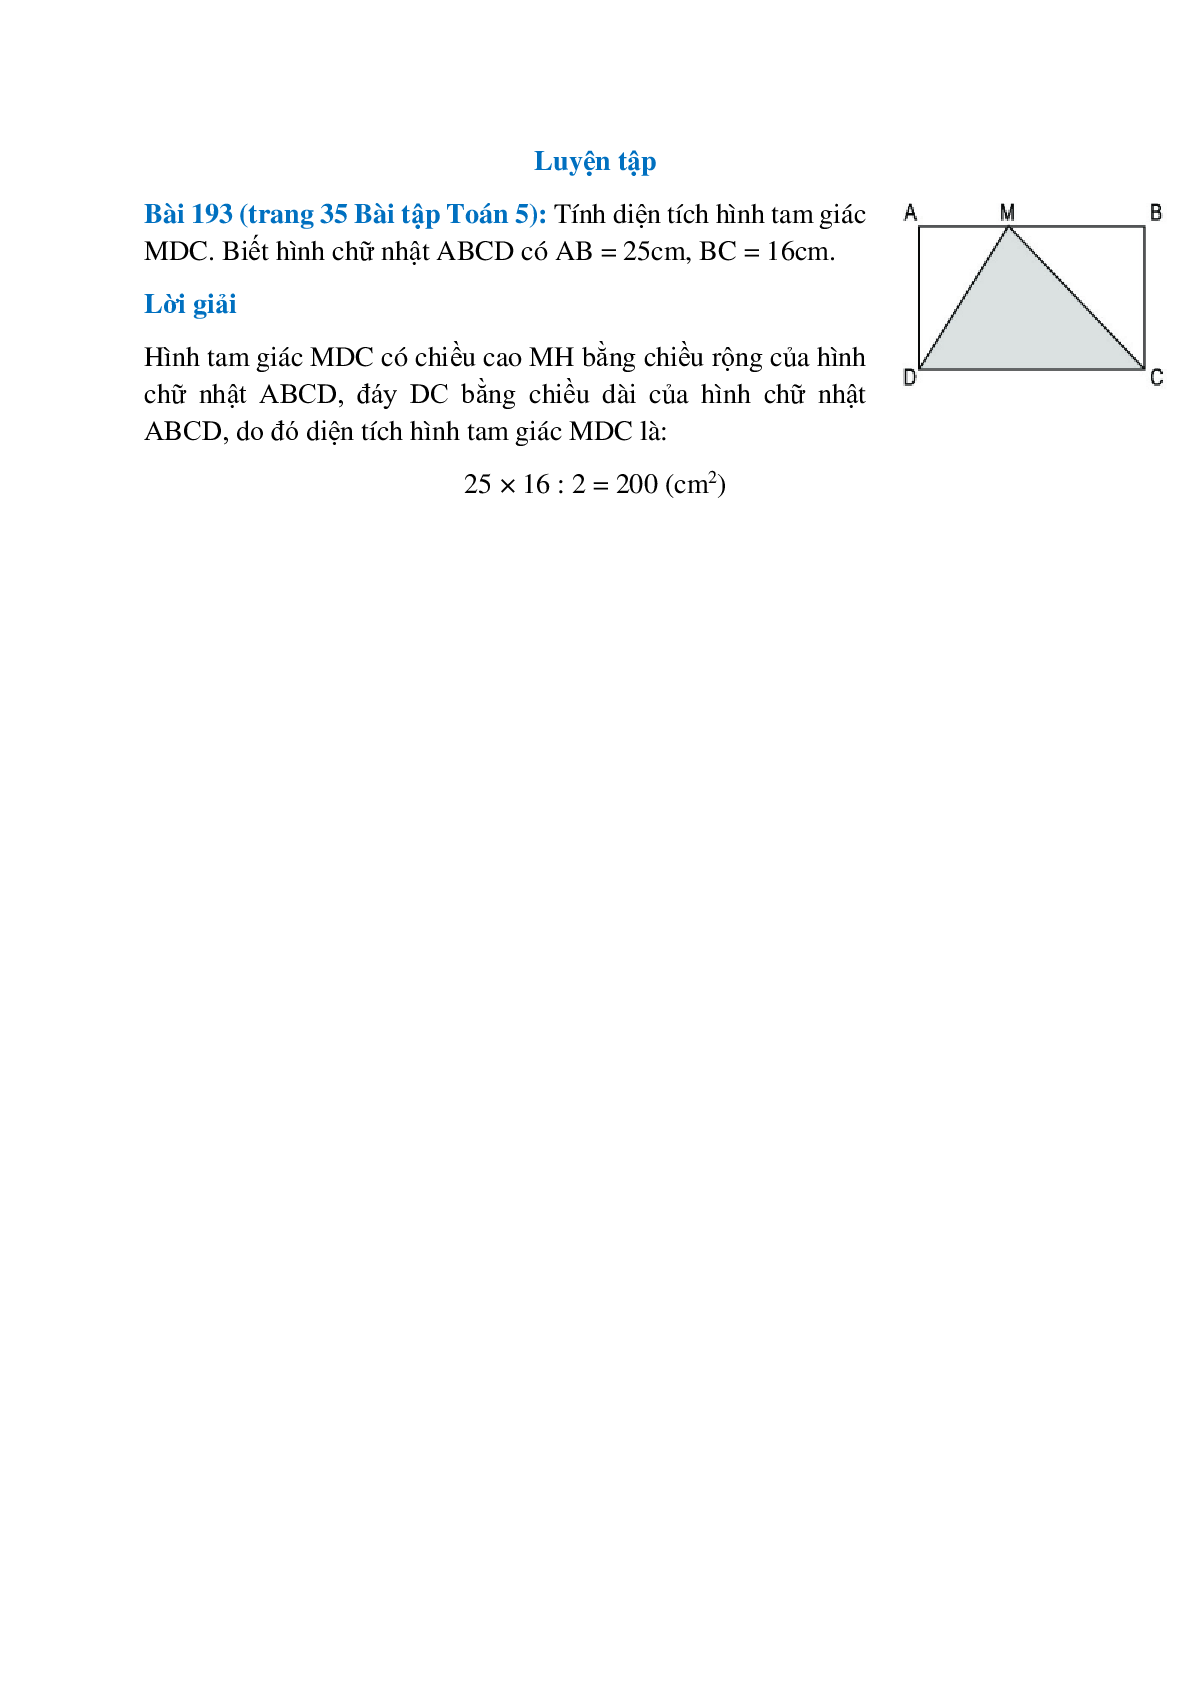 Tính diện tích hình tam giác MDC. Biết hình chữ nhật ABCD có AB = 25cm, BC = 16cm (trang 1)